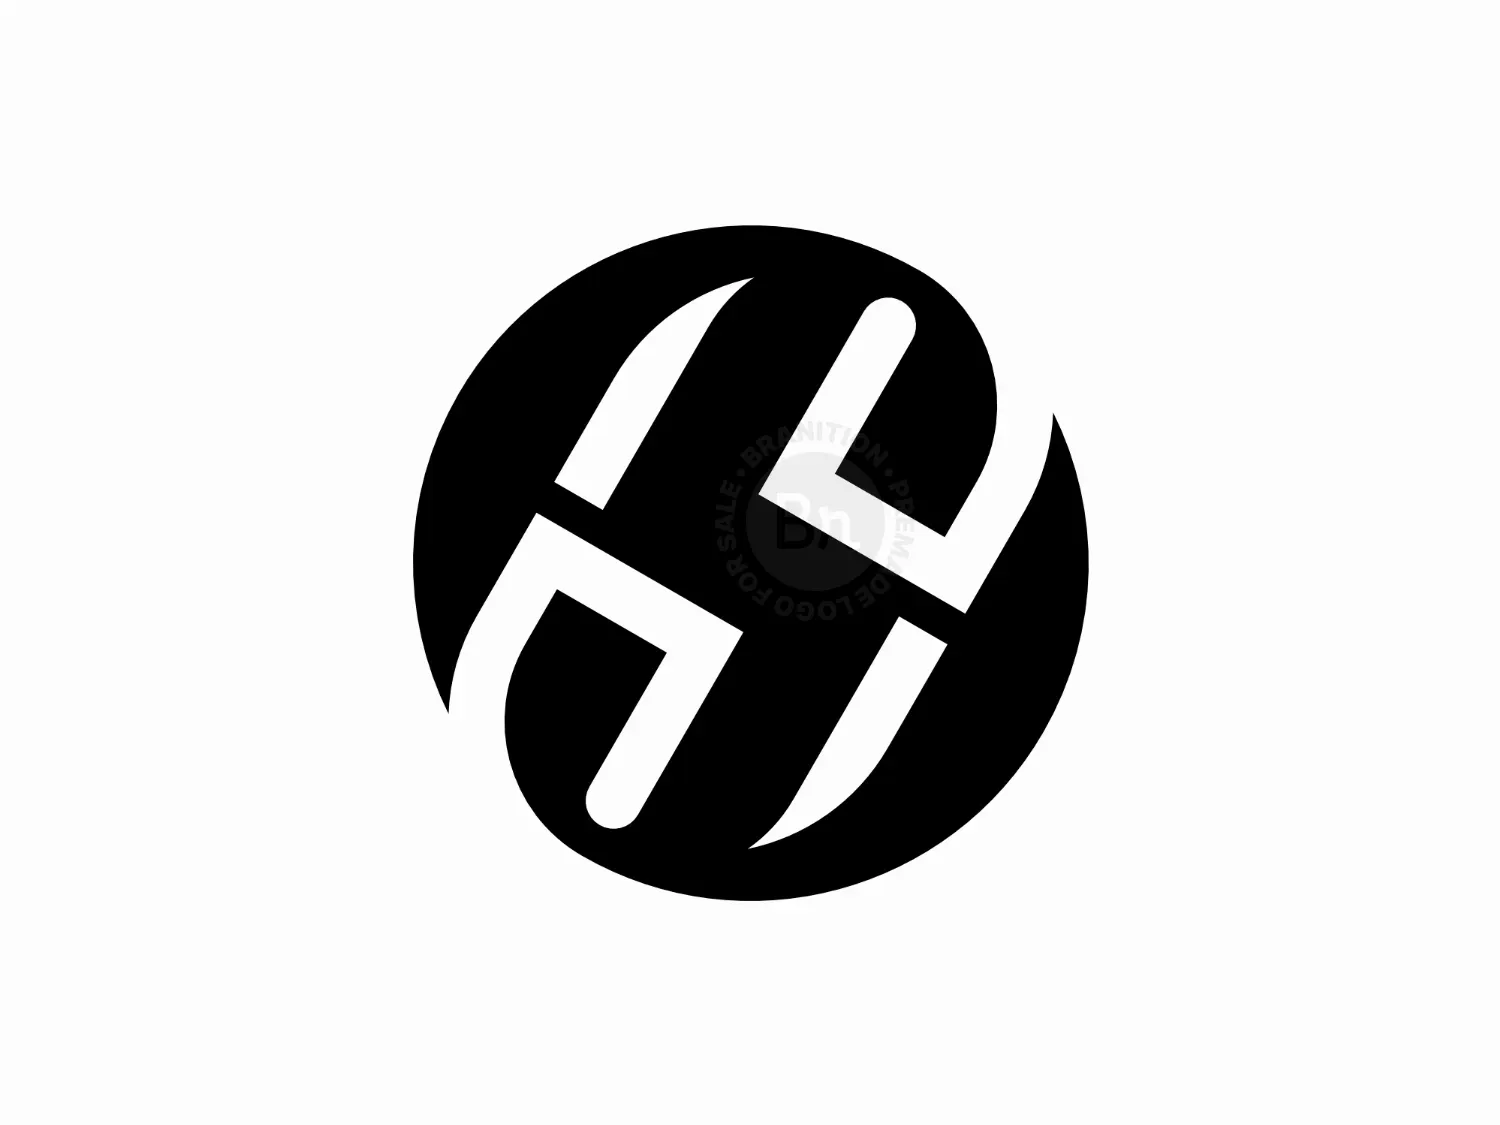 Letter Os Or So Monogram Logo